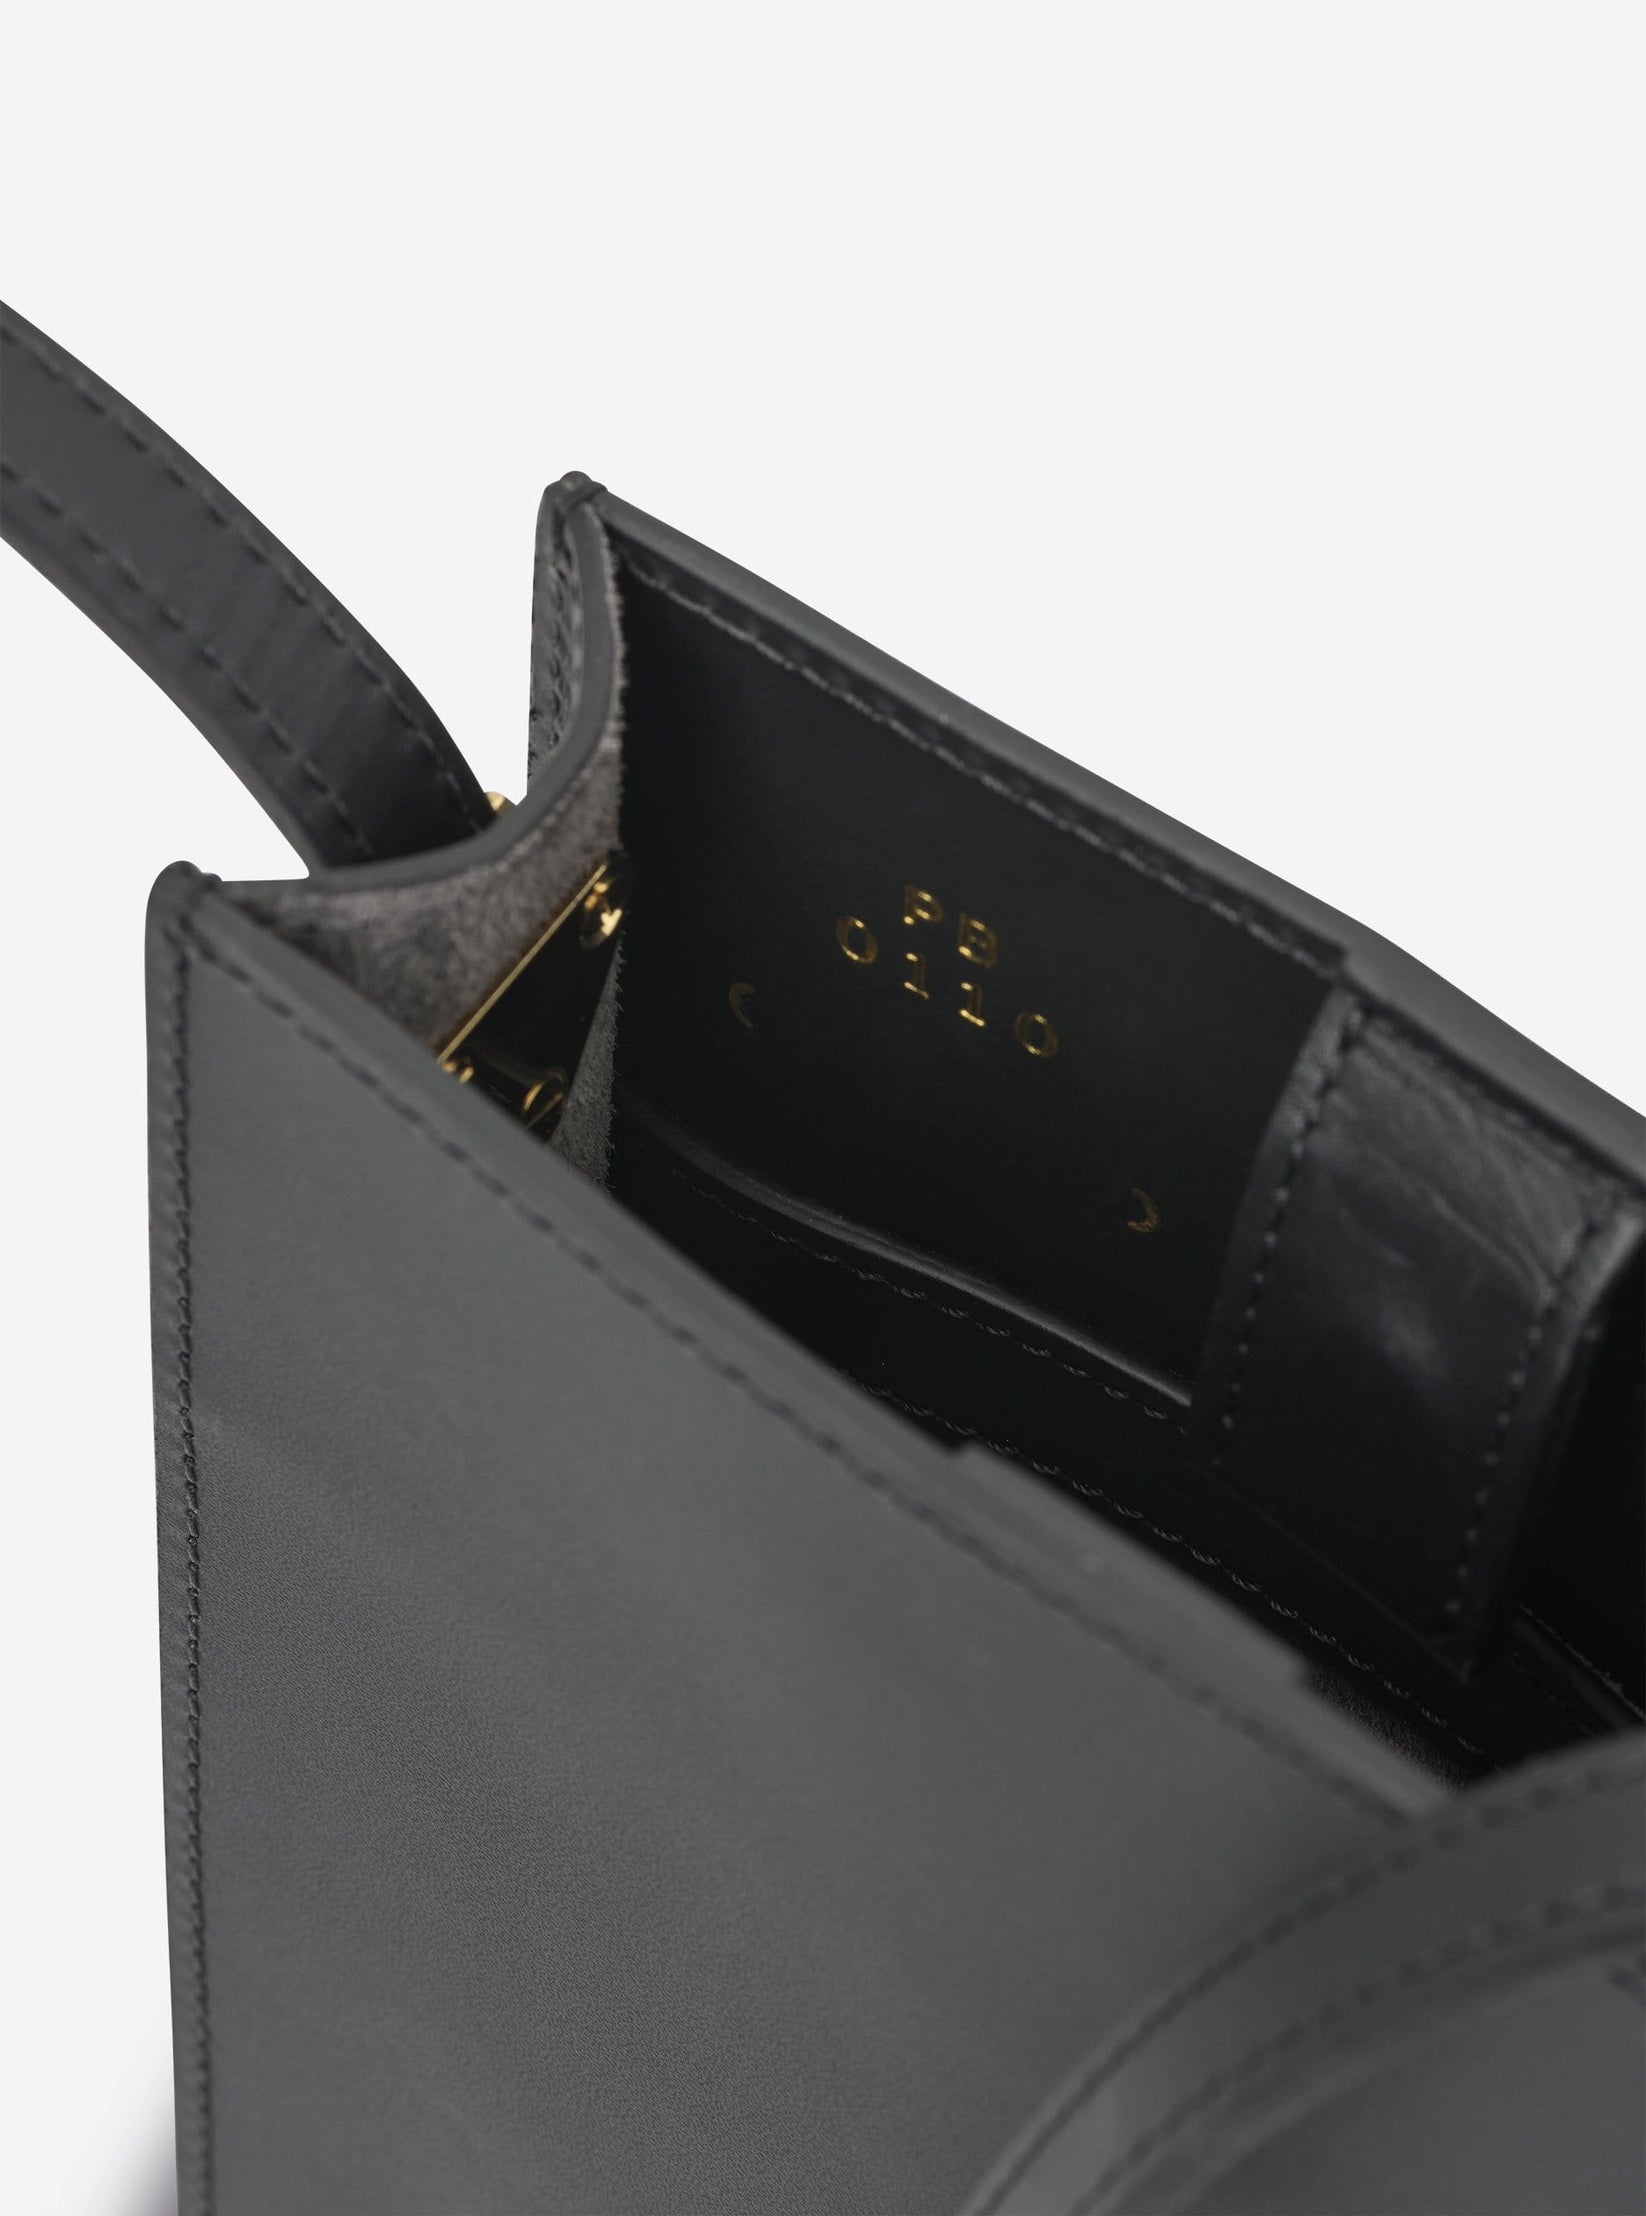 Unisex AB 105 black natural leather shoulder bag - PB0110 – PB 0110